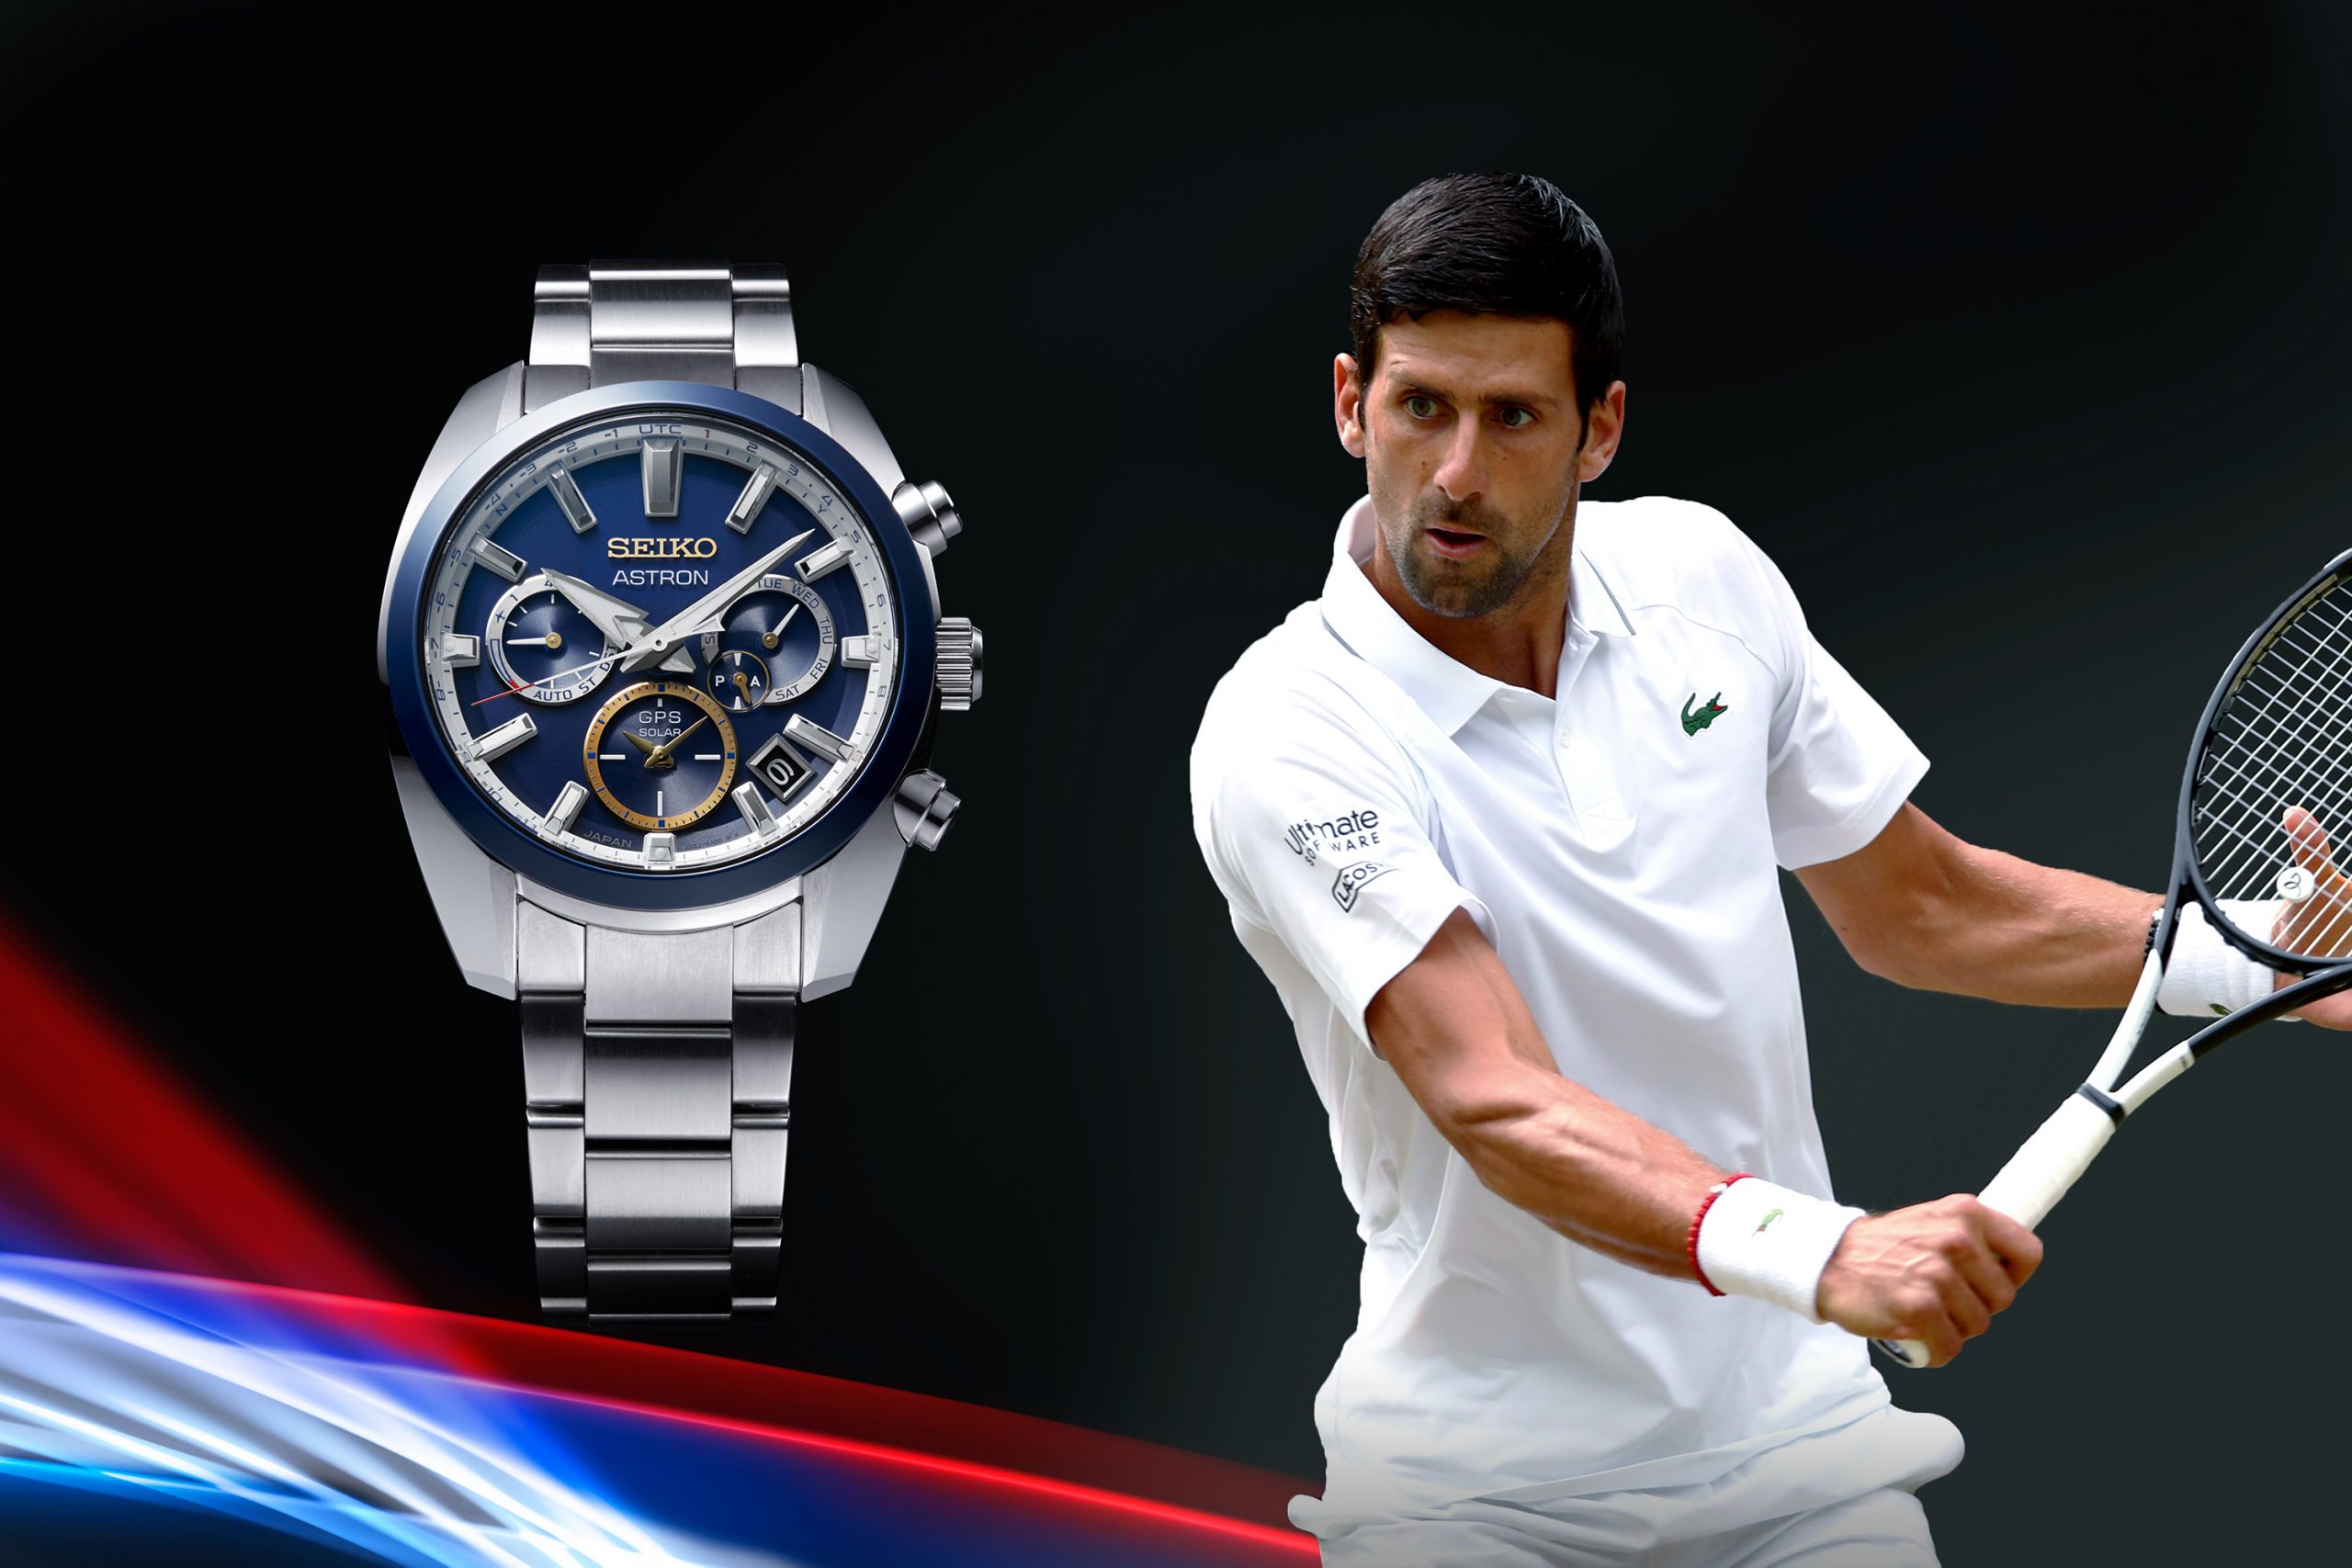 Tennis legend Novak Djokovic is also a Seiko brand ambassador 